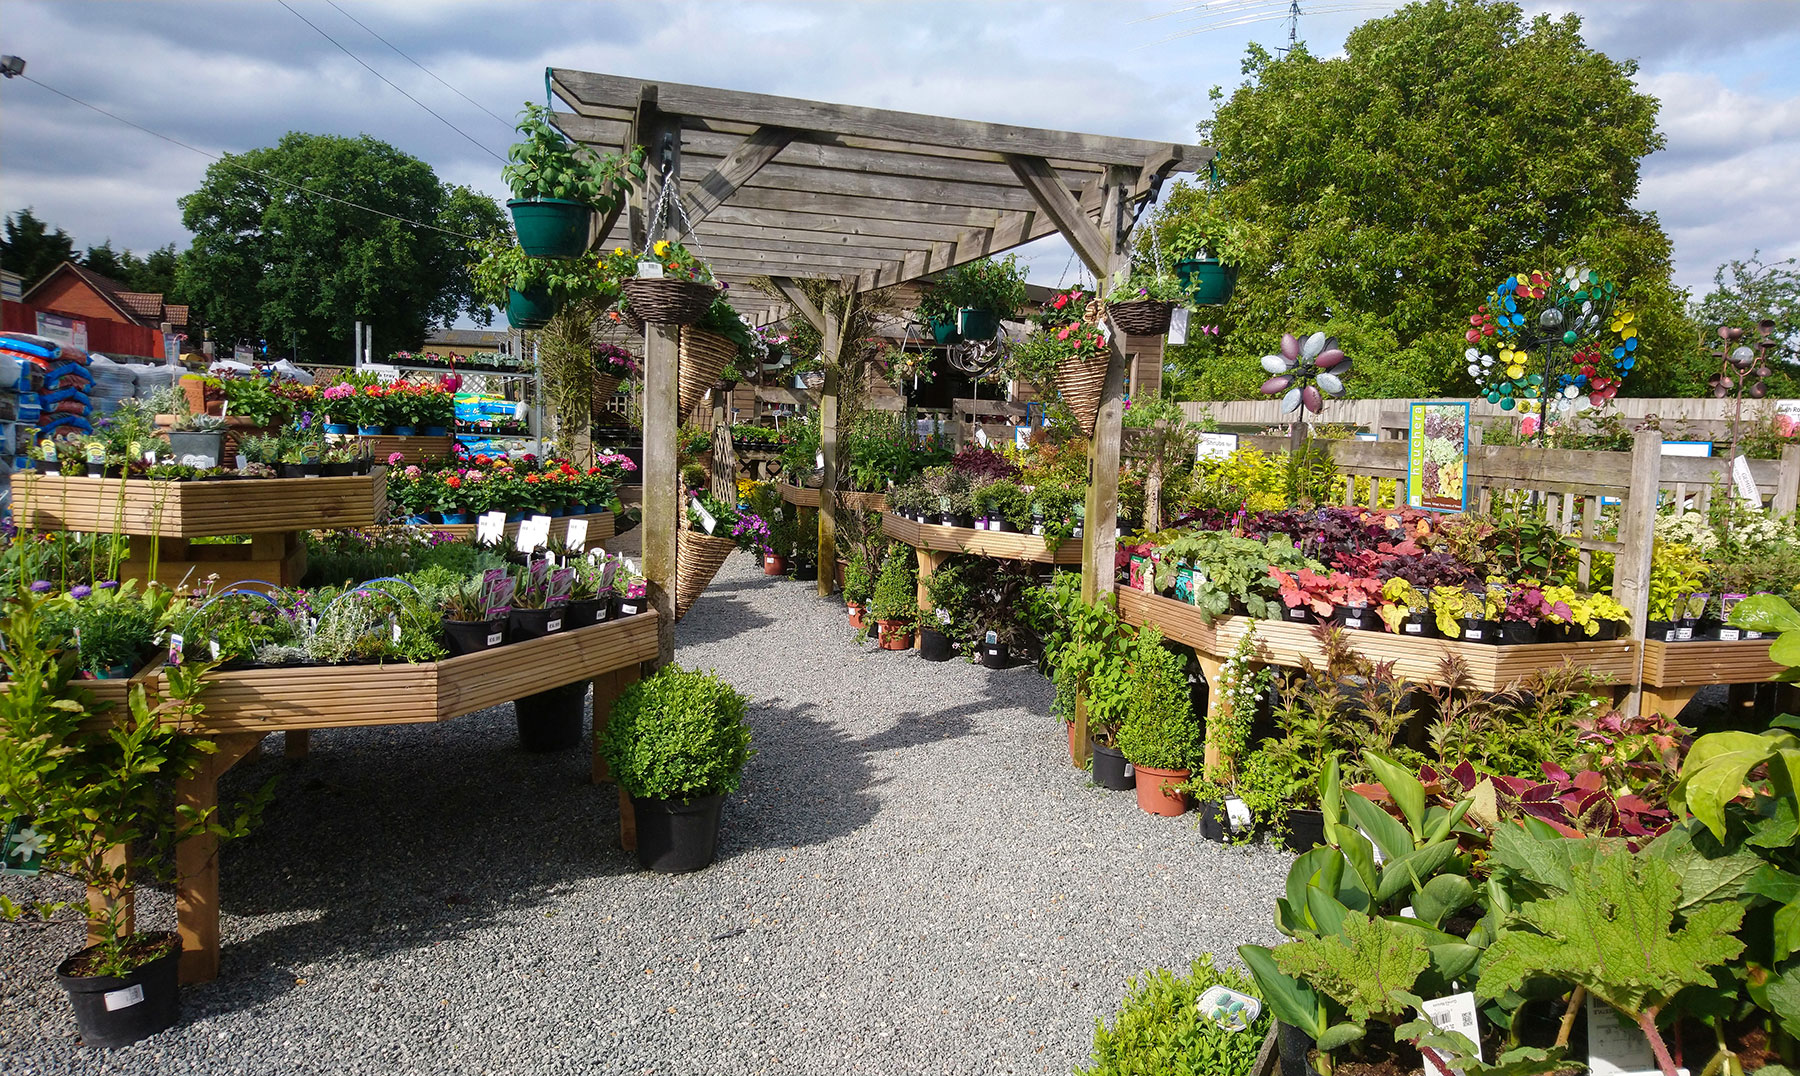 P&R Garden Supplies - A traditional plant-based garden centre